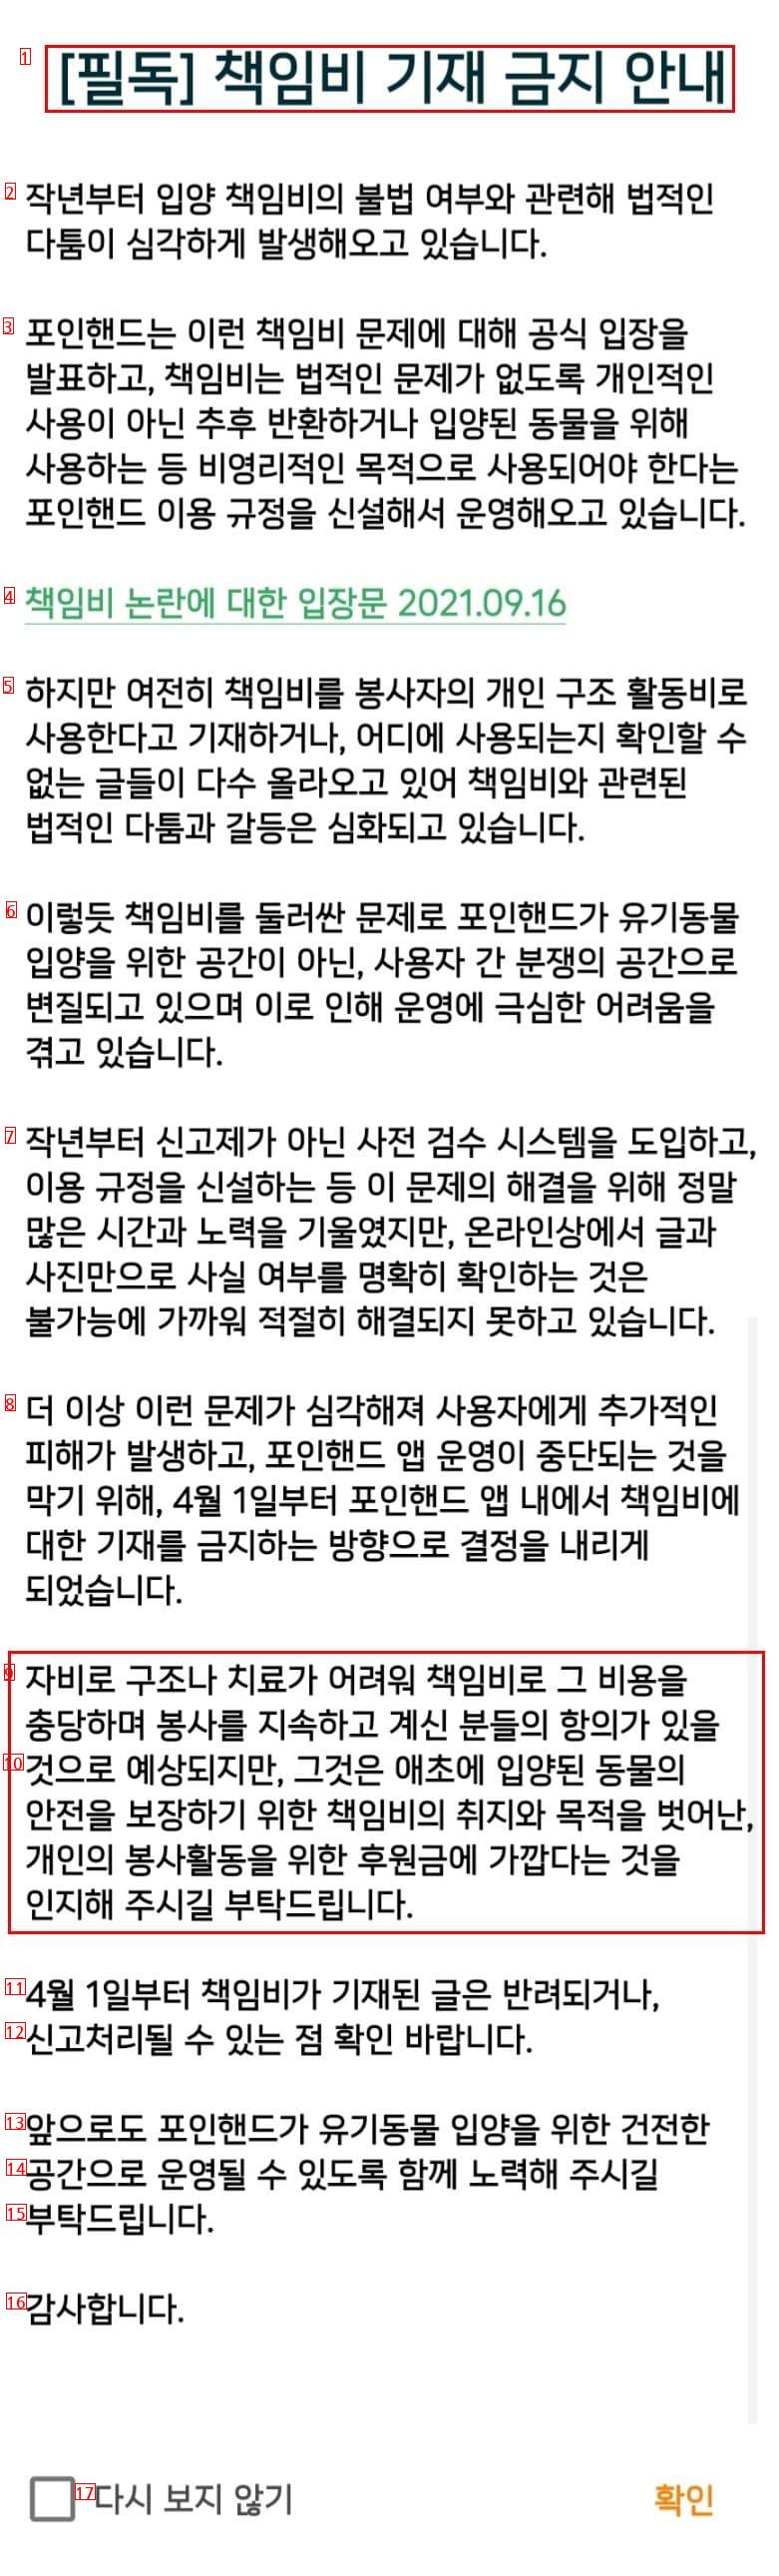 キャットマム嗚咽事件 韓国最大養子縁組アプリの責任費を全面禁止